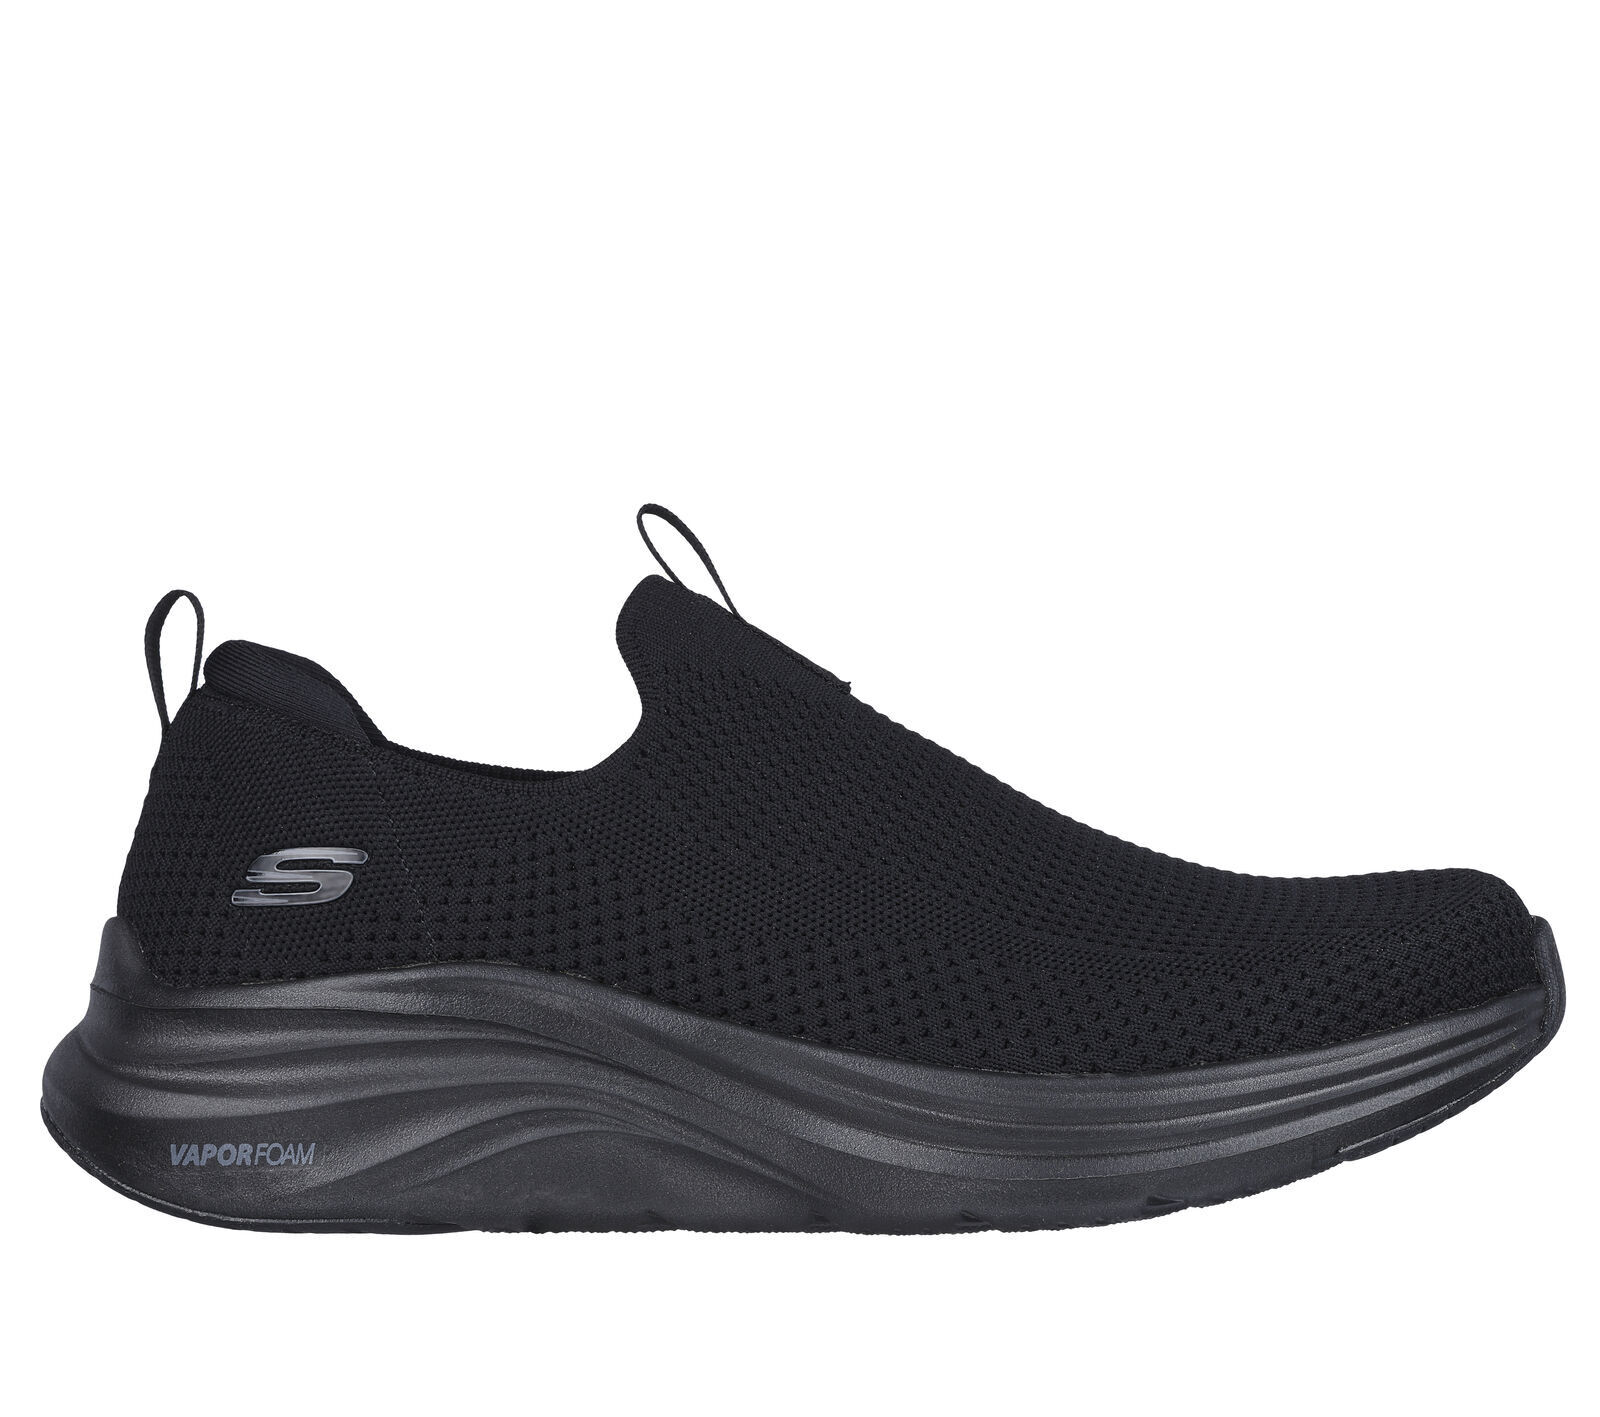 Skechers Vapor Foam - Covert - Urban schoenen - Heren | Hardloop